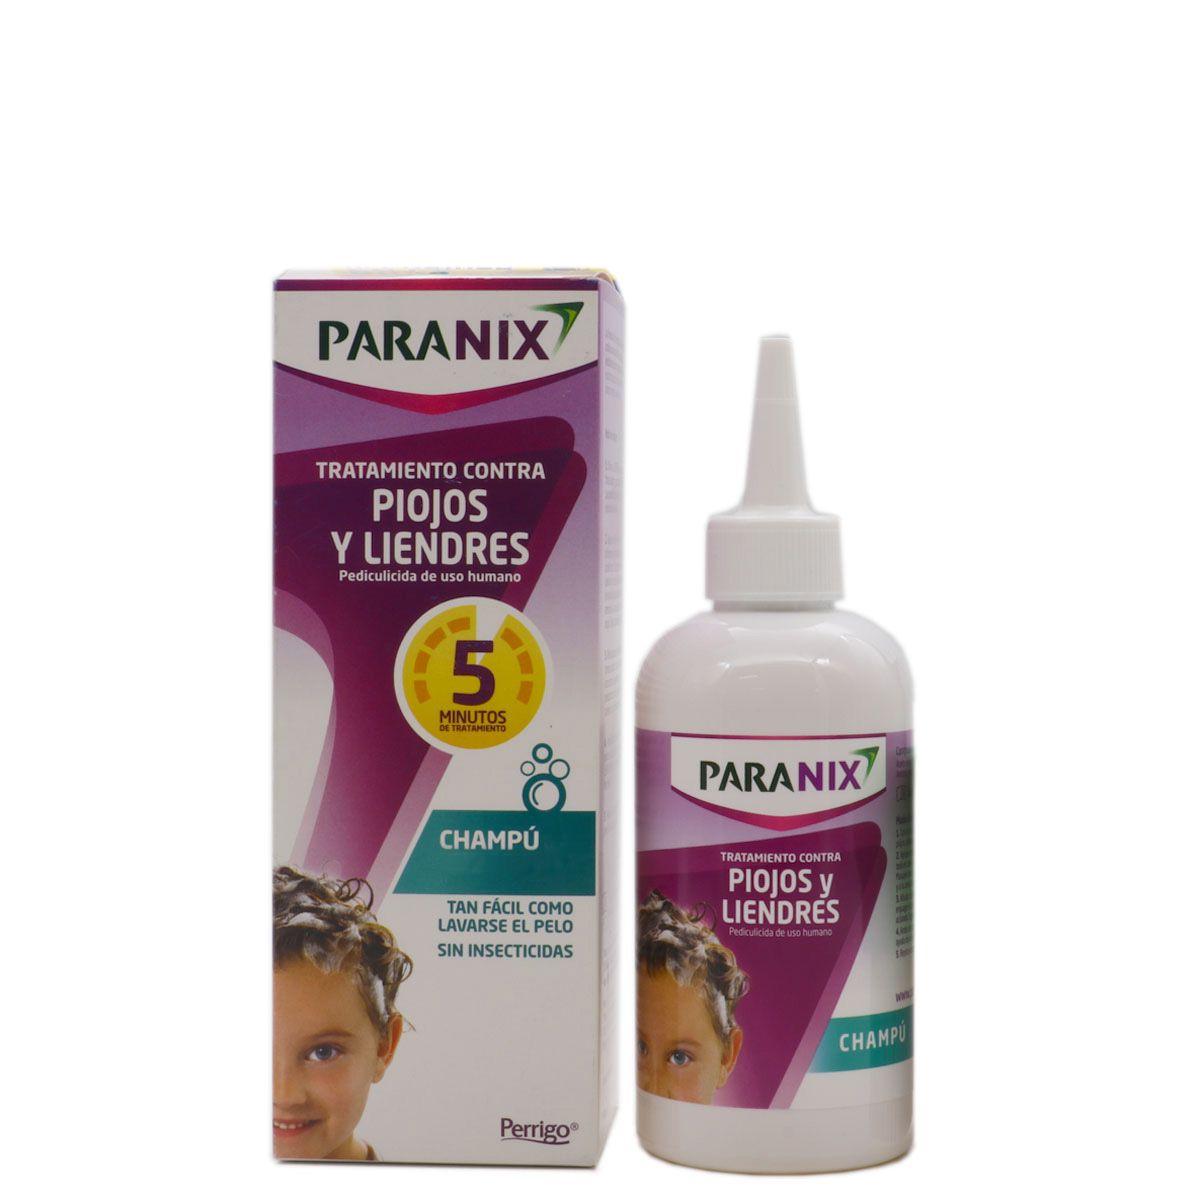 Paranix Tratamiento Contra Piojos Y Liendres En Spray 100 Ml